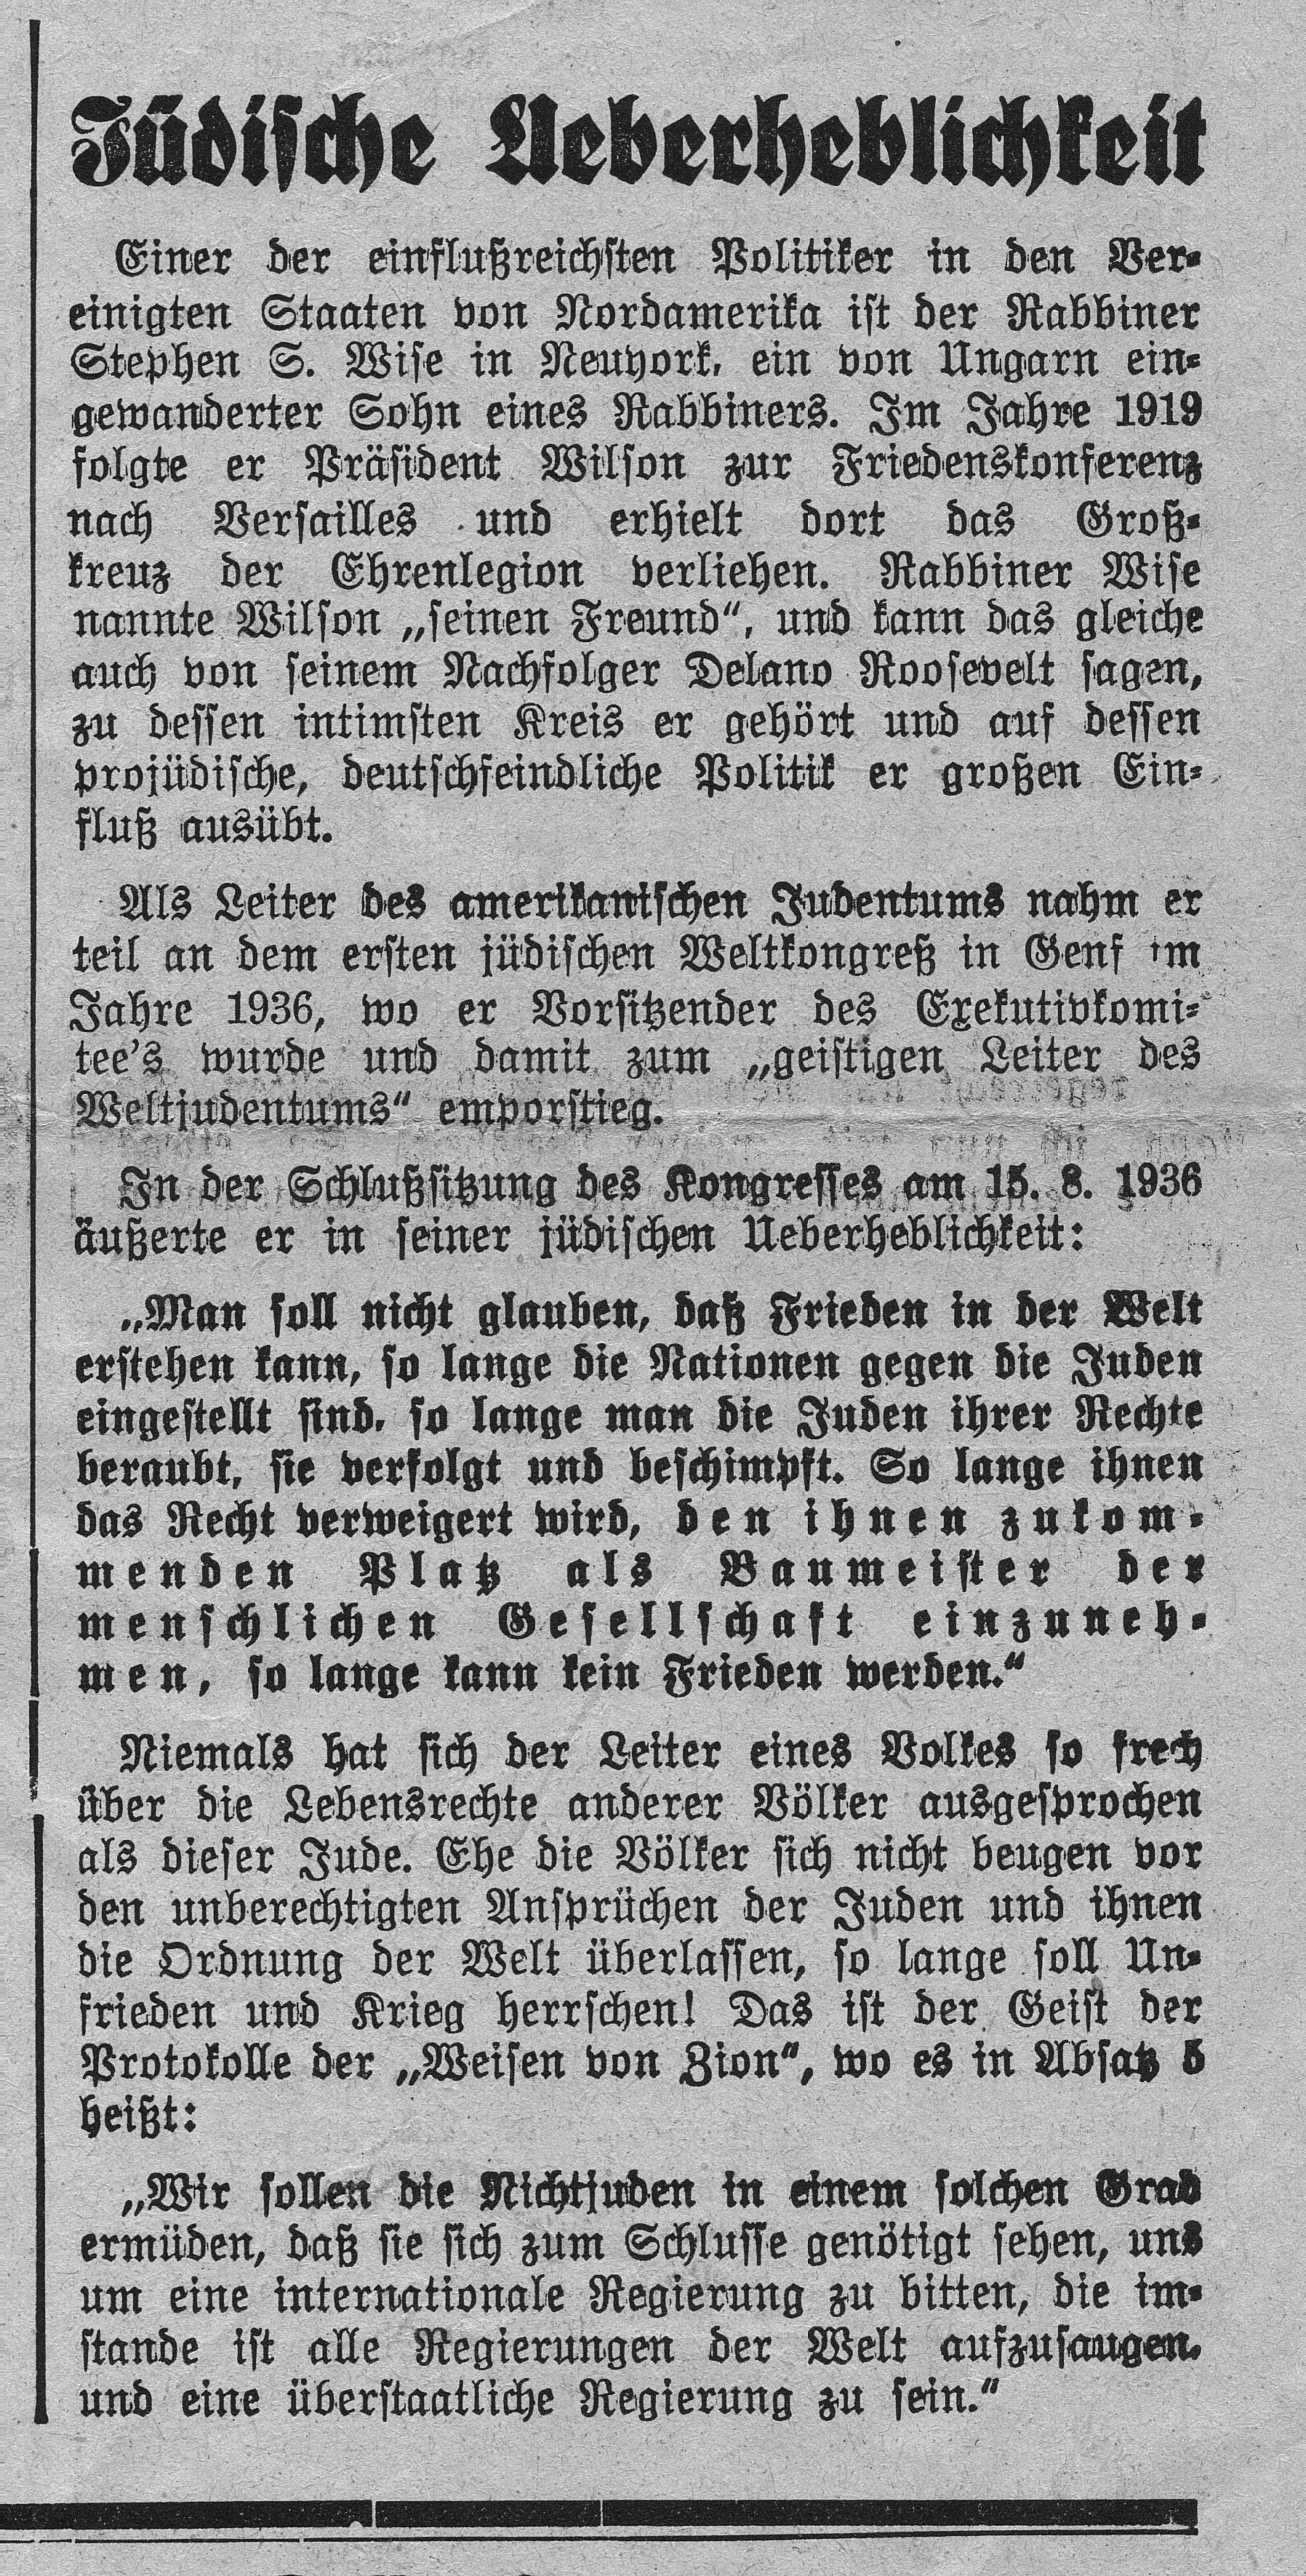 Ausschnitt der Originalausgabe "Der Stürmer", "Jüdische Rachepläne" vom 23. Juli 1942, 20. Jahr, Nummer 30 der Wochenausgabe im Jahre 1942, Ausschnitt Seite 4, Privatbesitz